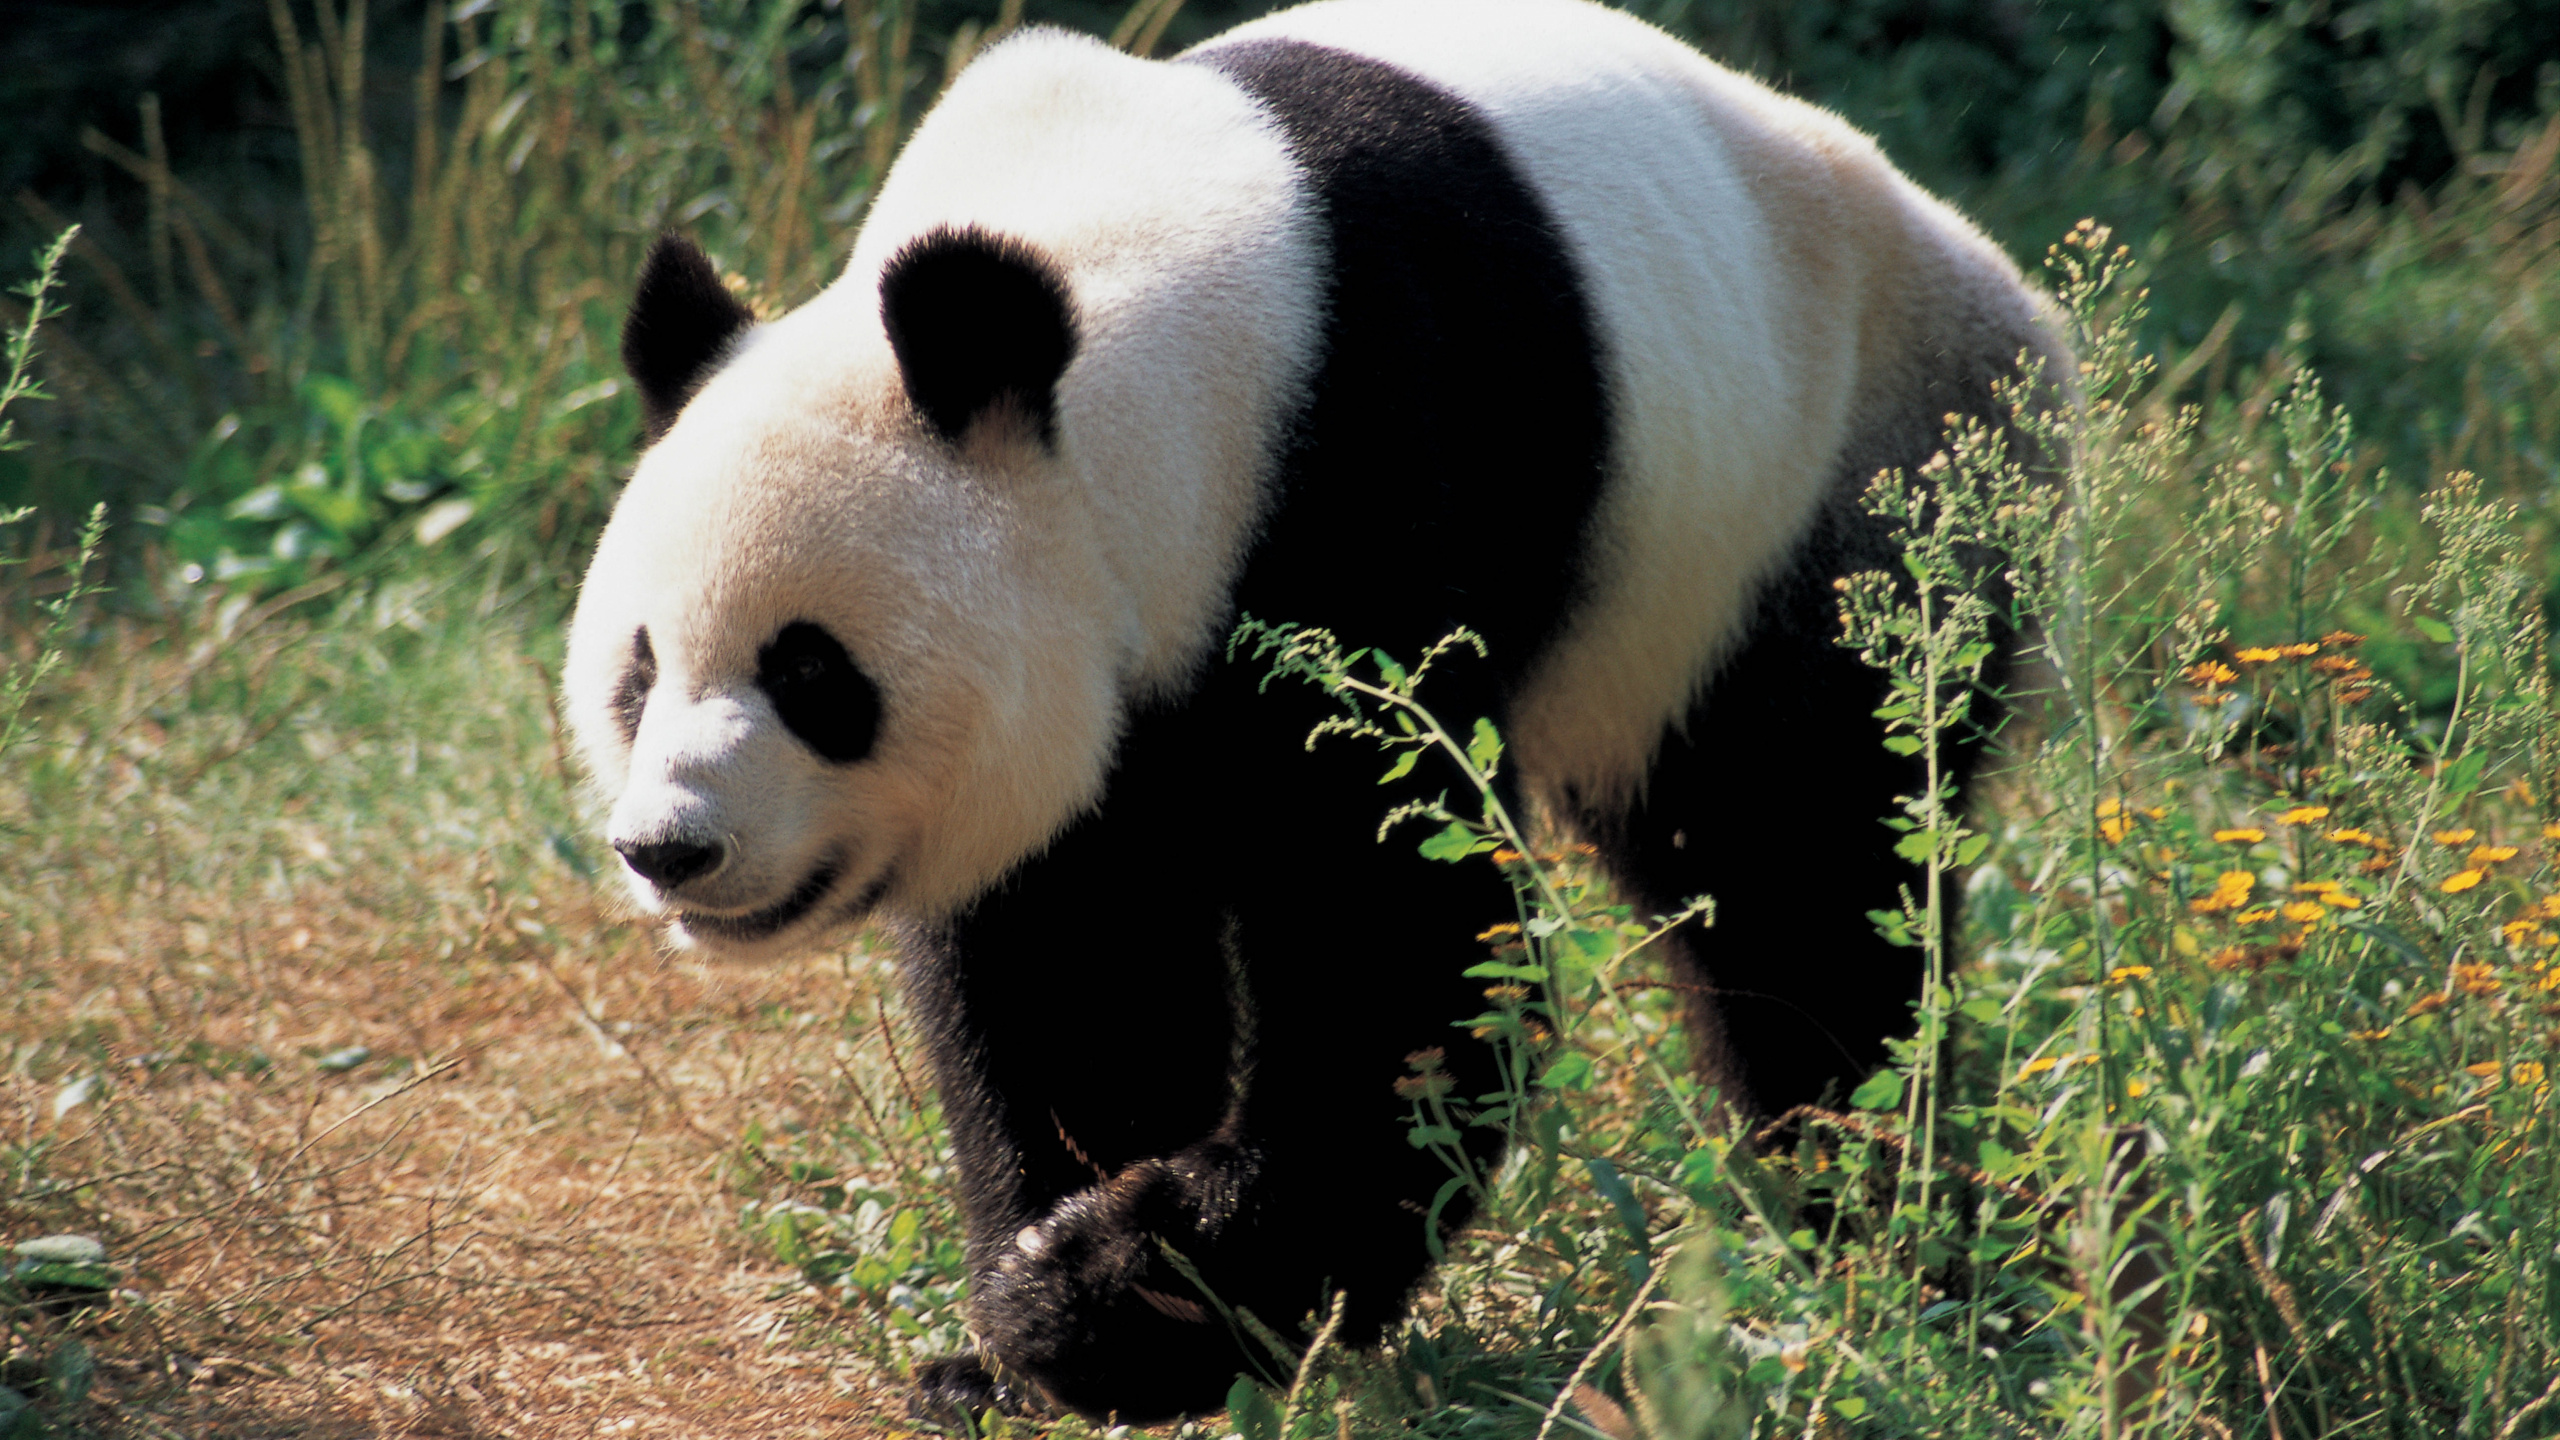 大熊猫, 陆地动物, 熊, 野生动物, 可爱 壁纸 2560x1440 允许